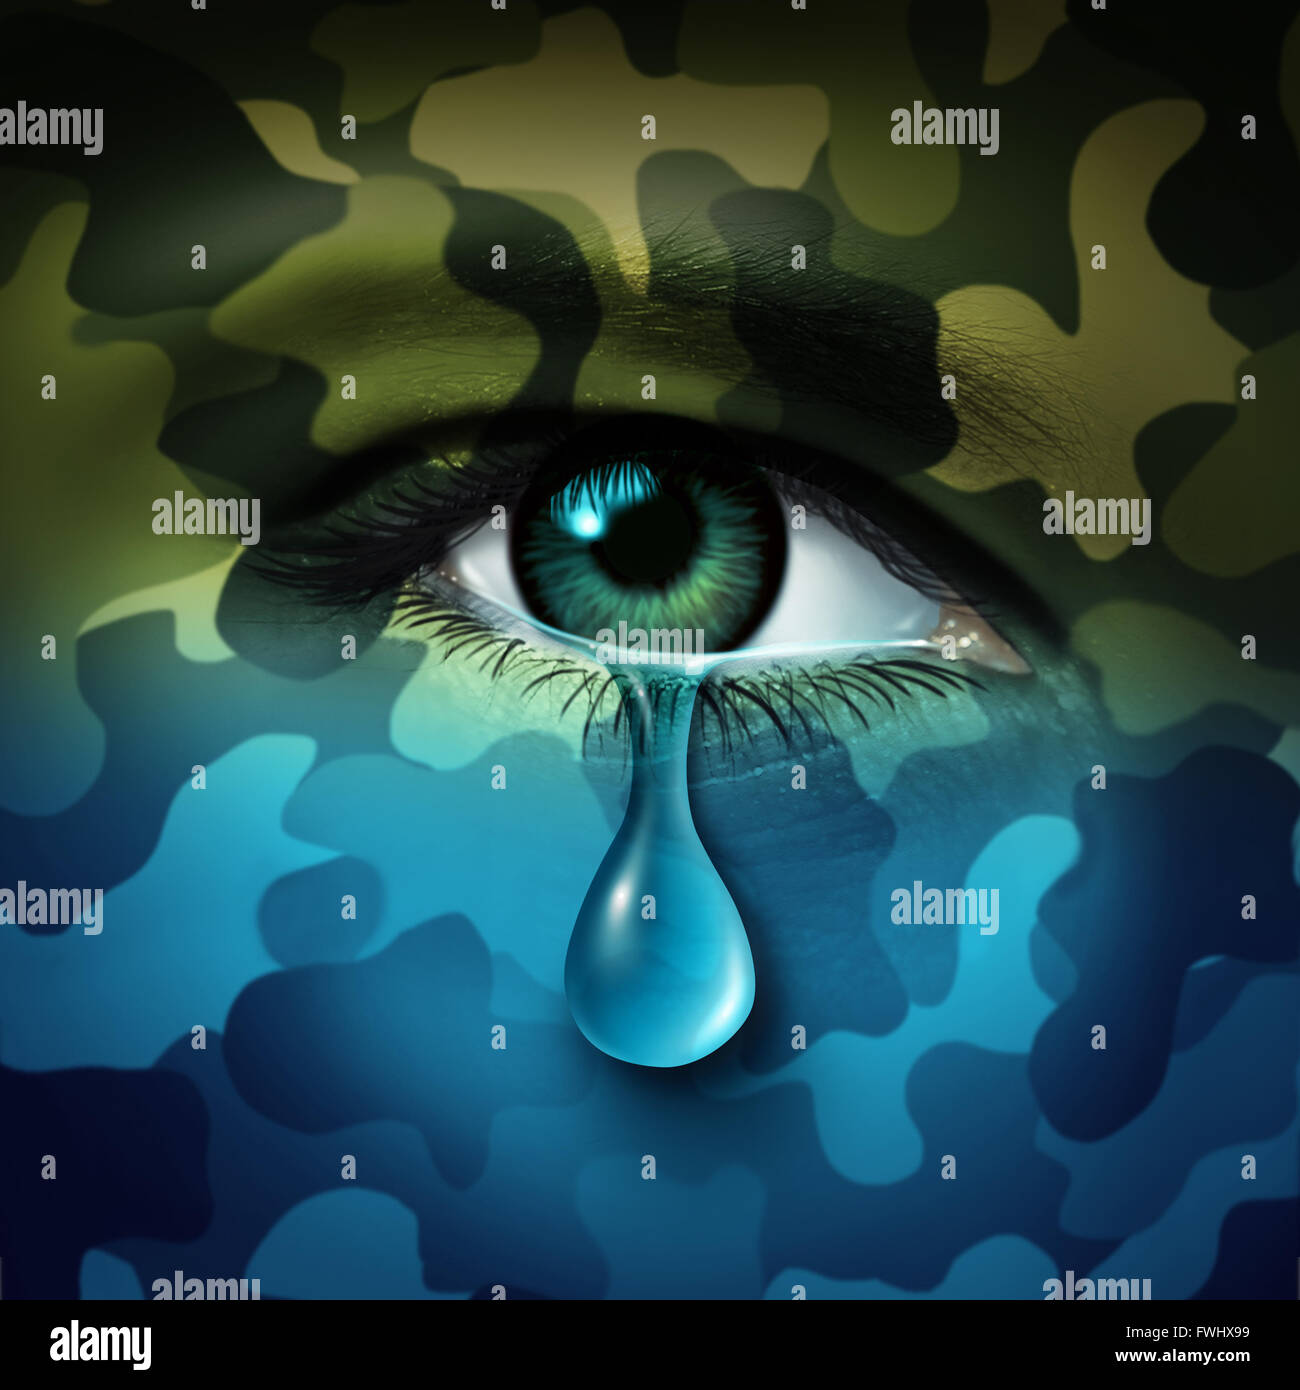 Militärische Depressionen psychische Gesundheitskonzept und Opfer des Krieges Symbol als eine weinende Auge Träne mit grünen Tarnung Umwandlung in eine blaue Stimmung als Metapher für veteran Gesundheitswesen oder Kämpfer Probleme. Stockfoto